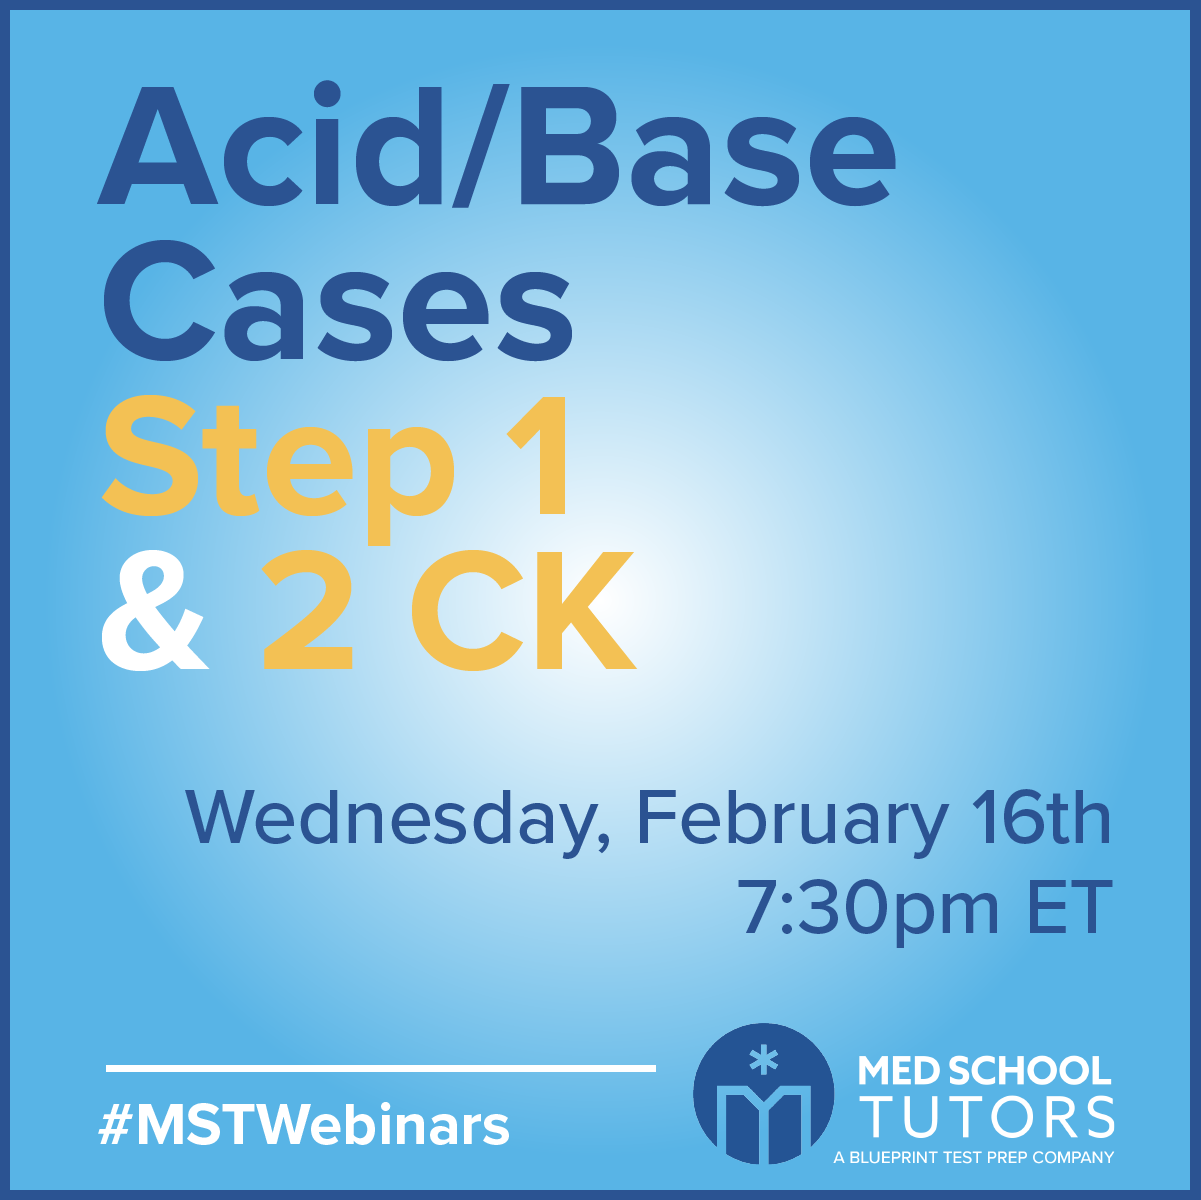 Register now for our Acid/Base Cases (1 & 2 CK) webinar!